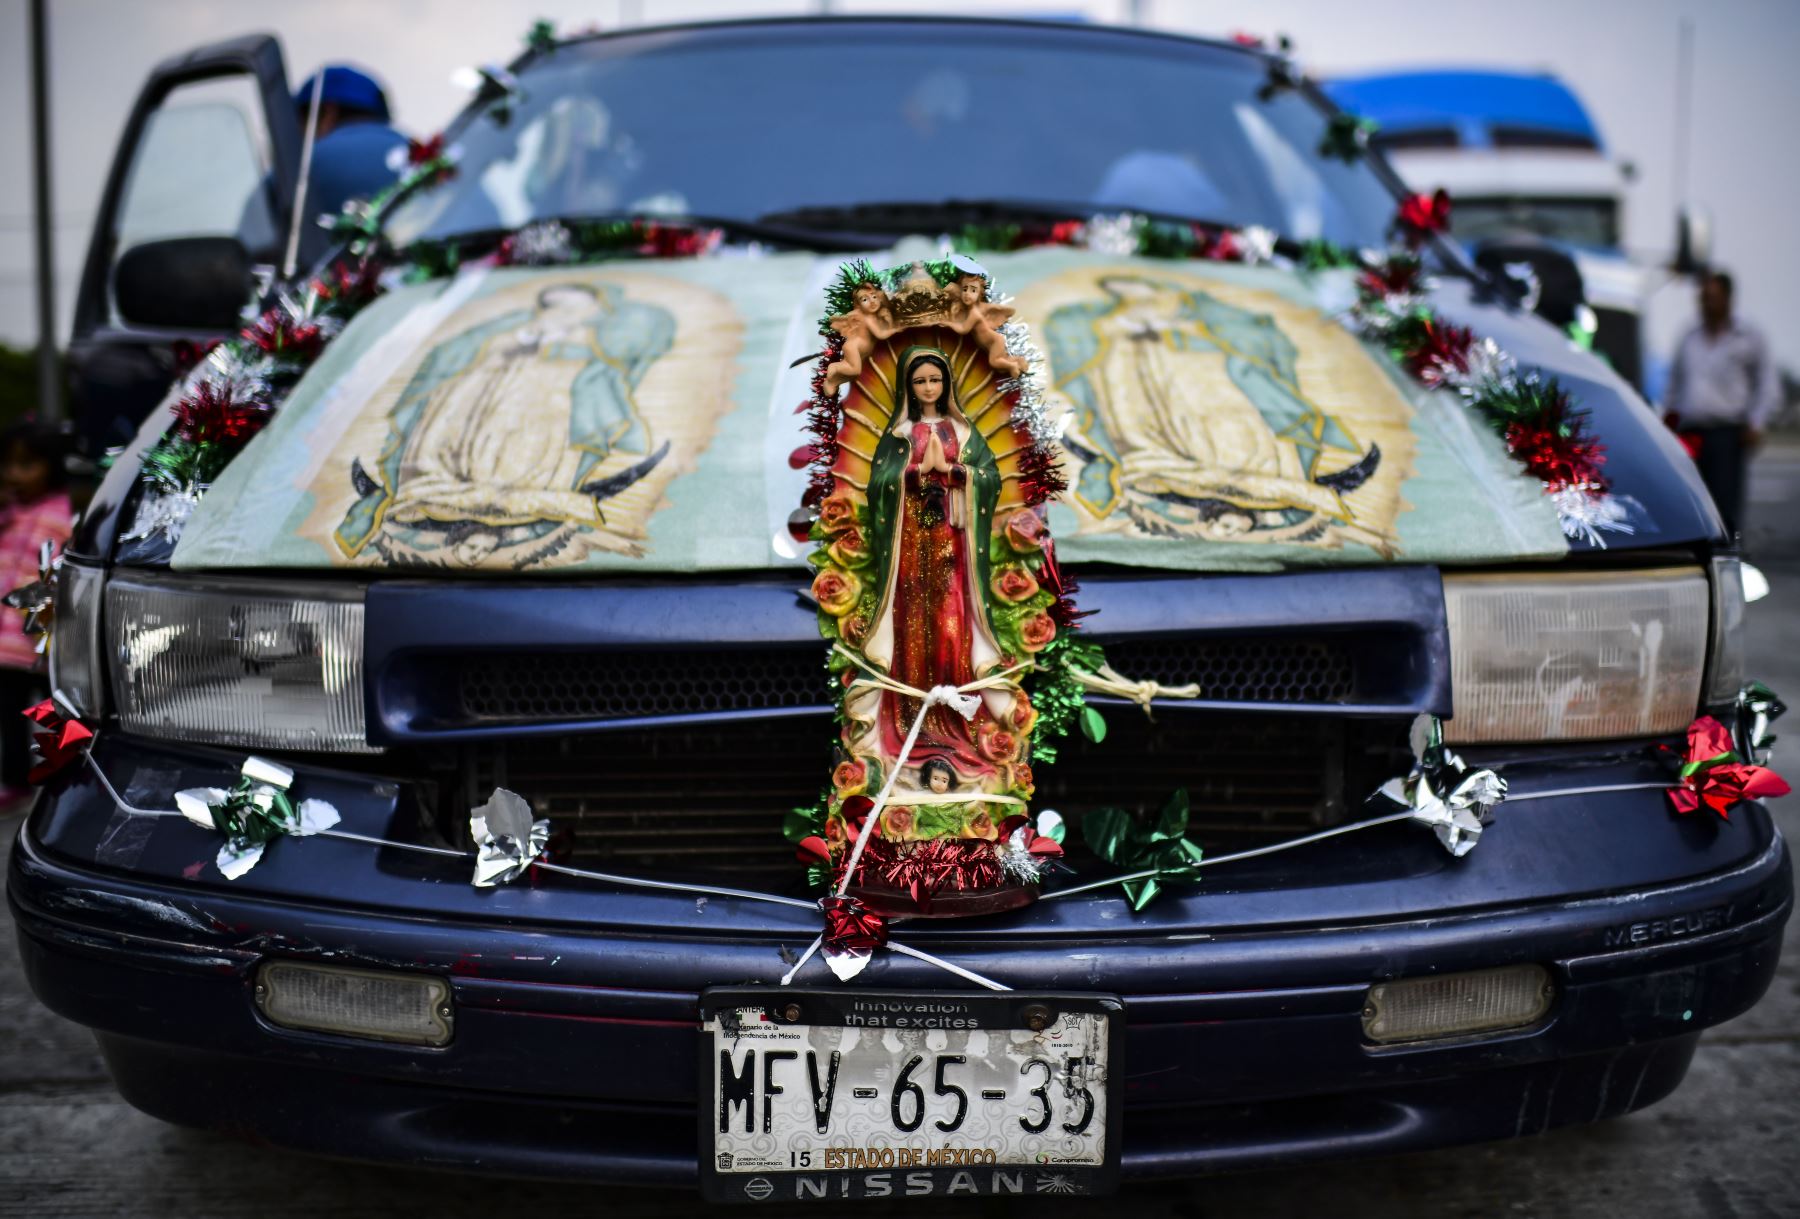 Una familia adorna su camioneta con imágenes y estatuas de la virgen de Guadalupe mientras se dirigían a las celebraciones anuales que se celebran en la Basílica de Guadalupe en la Ciudad de México el 10 de diciembre de 2018. - Los mexicanos celebrarán el 12 de diciembre de 2018, la aparición de la Nuestra Señora de Guadalupe a Juan Diego en 1531.  AFP